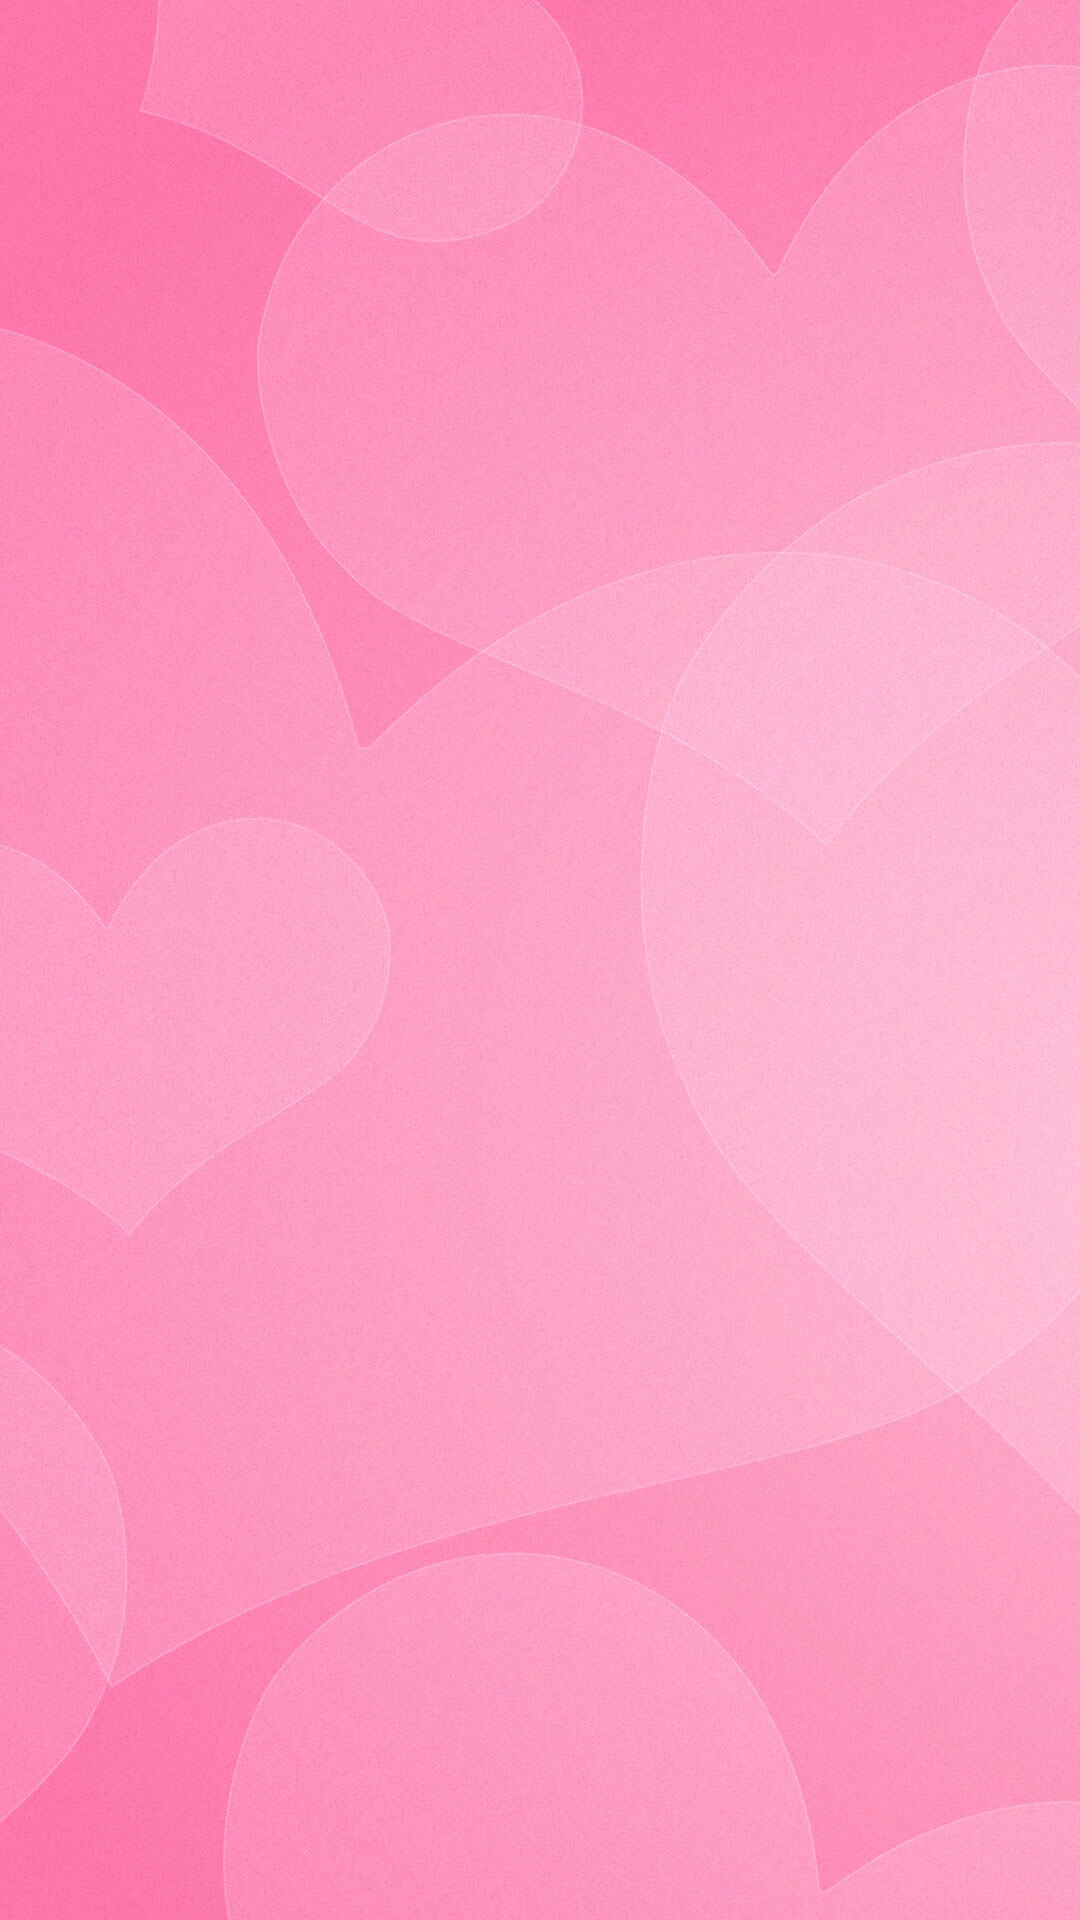 画像 Iphone6s 壁紙 ピンク 最高の選択されたhdの壁紙画像